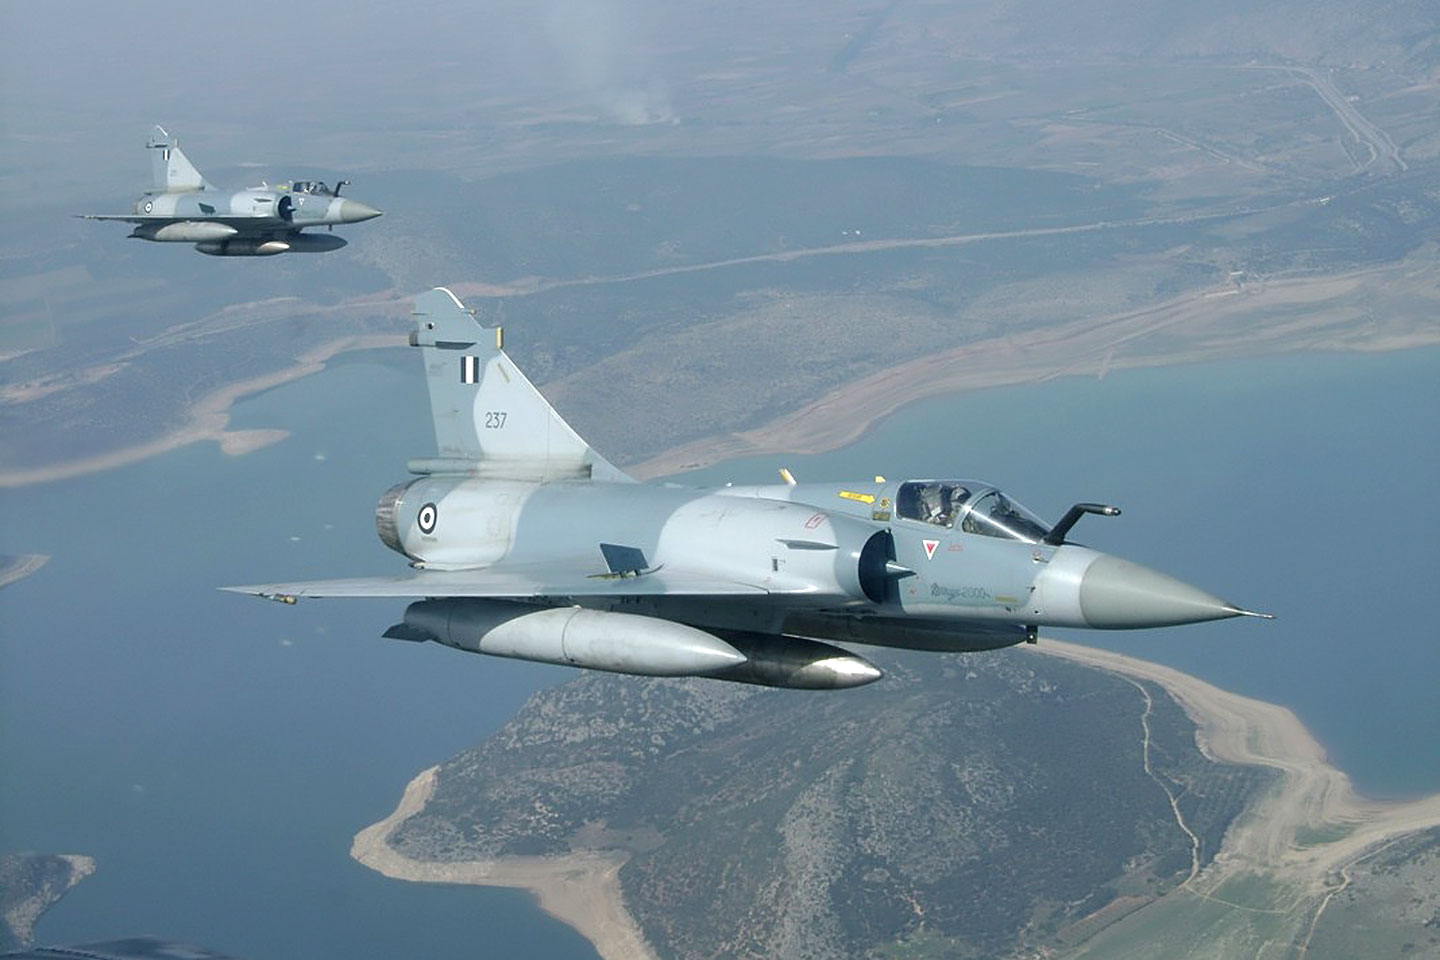 Βίντεο από αερομαχία Mirage 2000-5 με τουρκικό F-16 Block 50